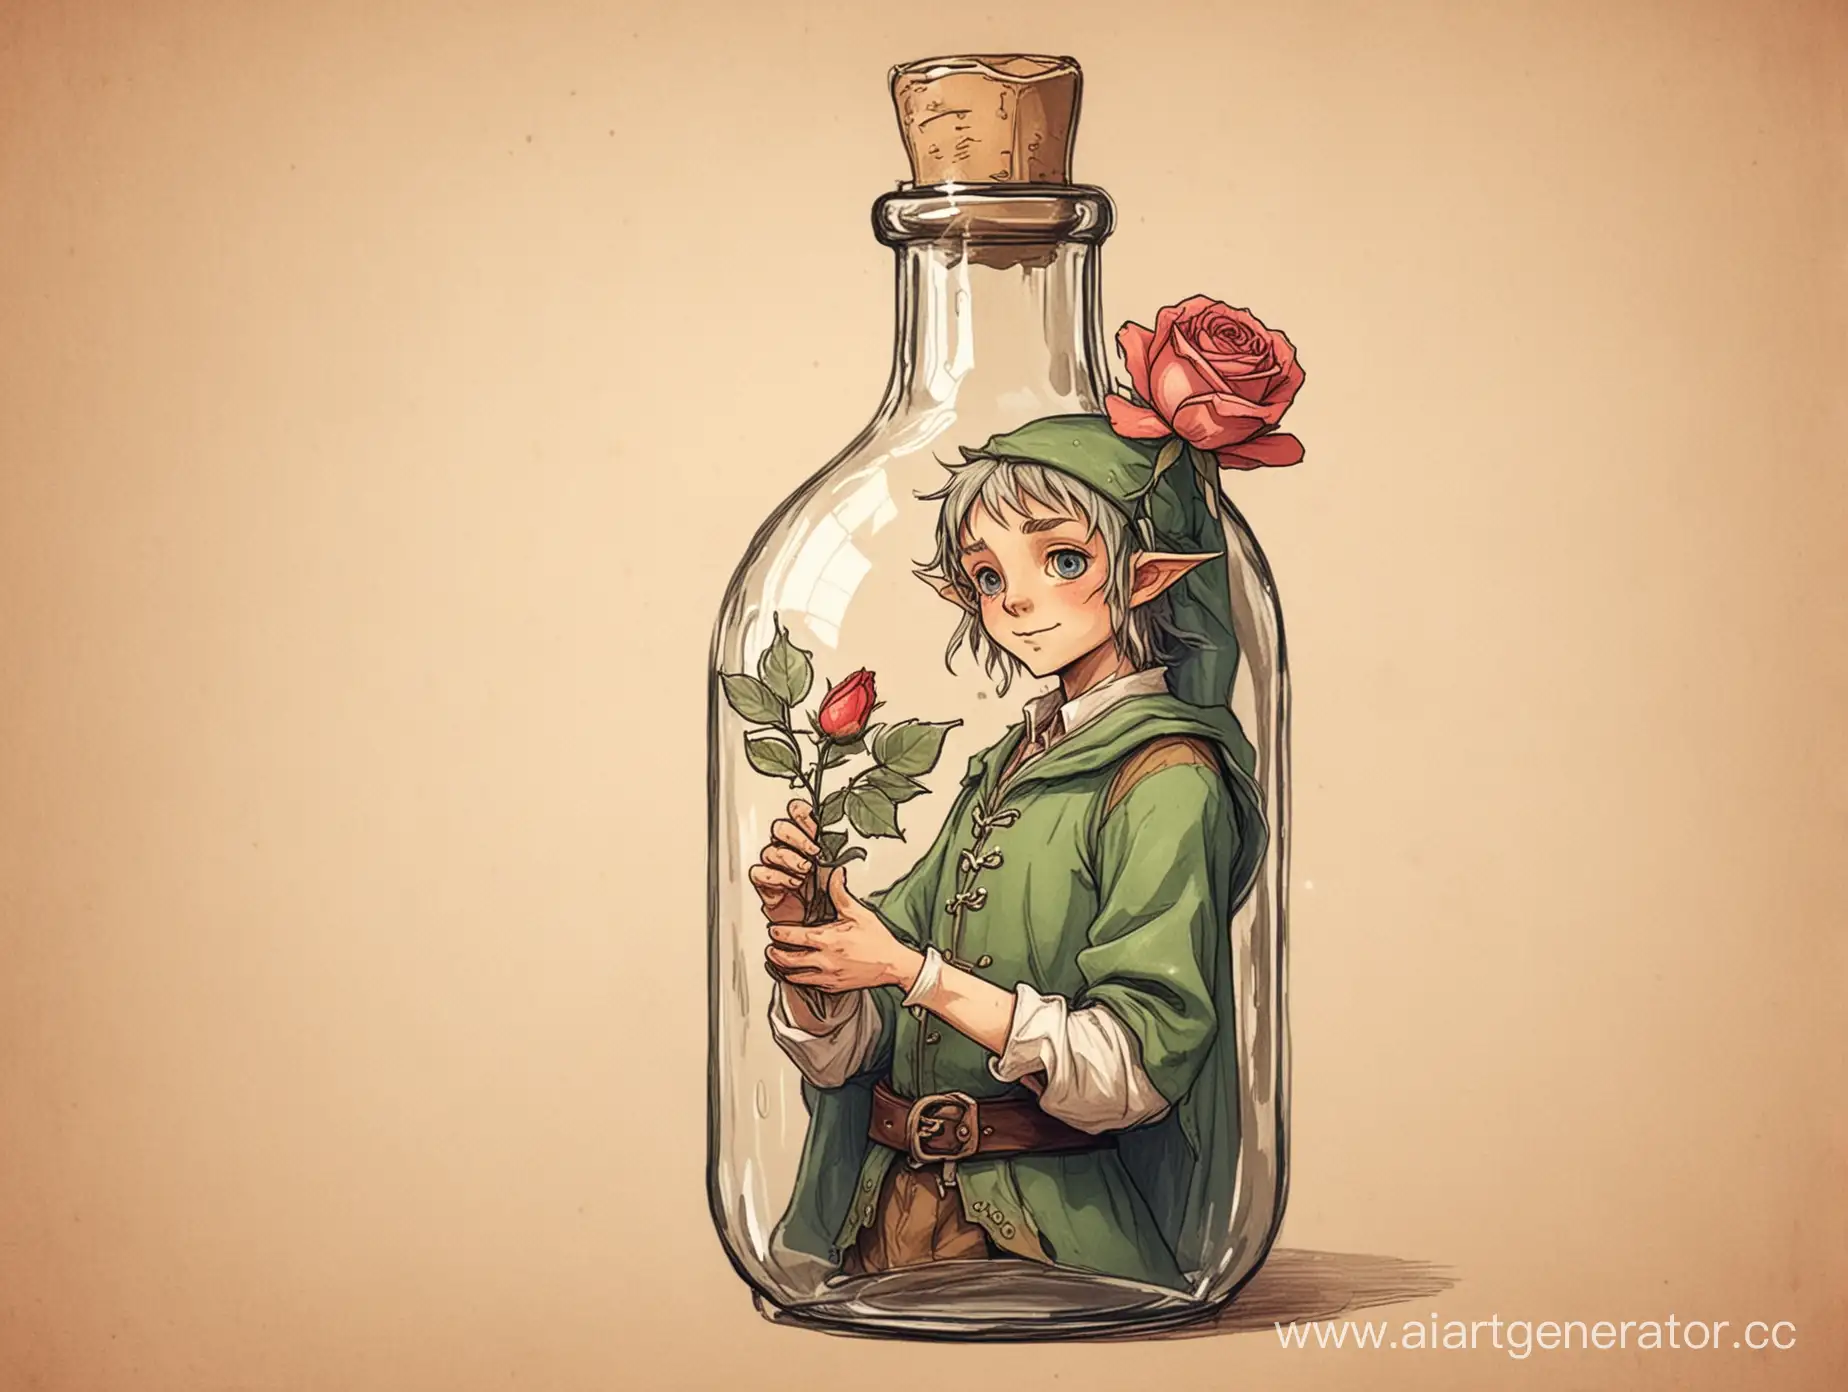 бутылка в которой находится маленький эльф держащий в руках розу. аниме стиль, формат рисунка на бумаге 